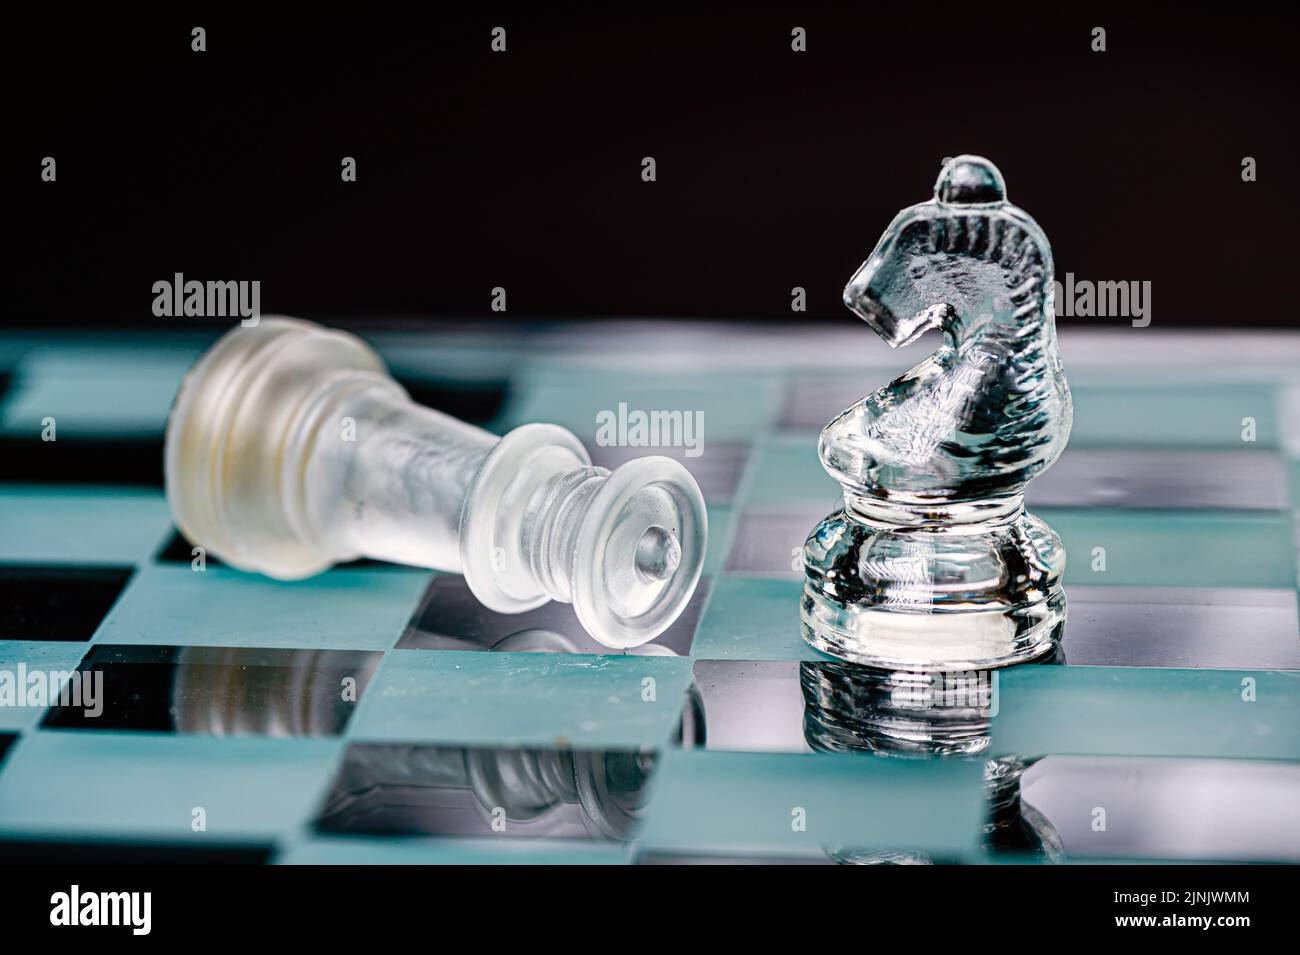 jeu d'échecs en verre transparent sur fond sombre, mise au point sélective sur la pièce de chevalier, gros plan Banque D'Images